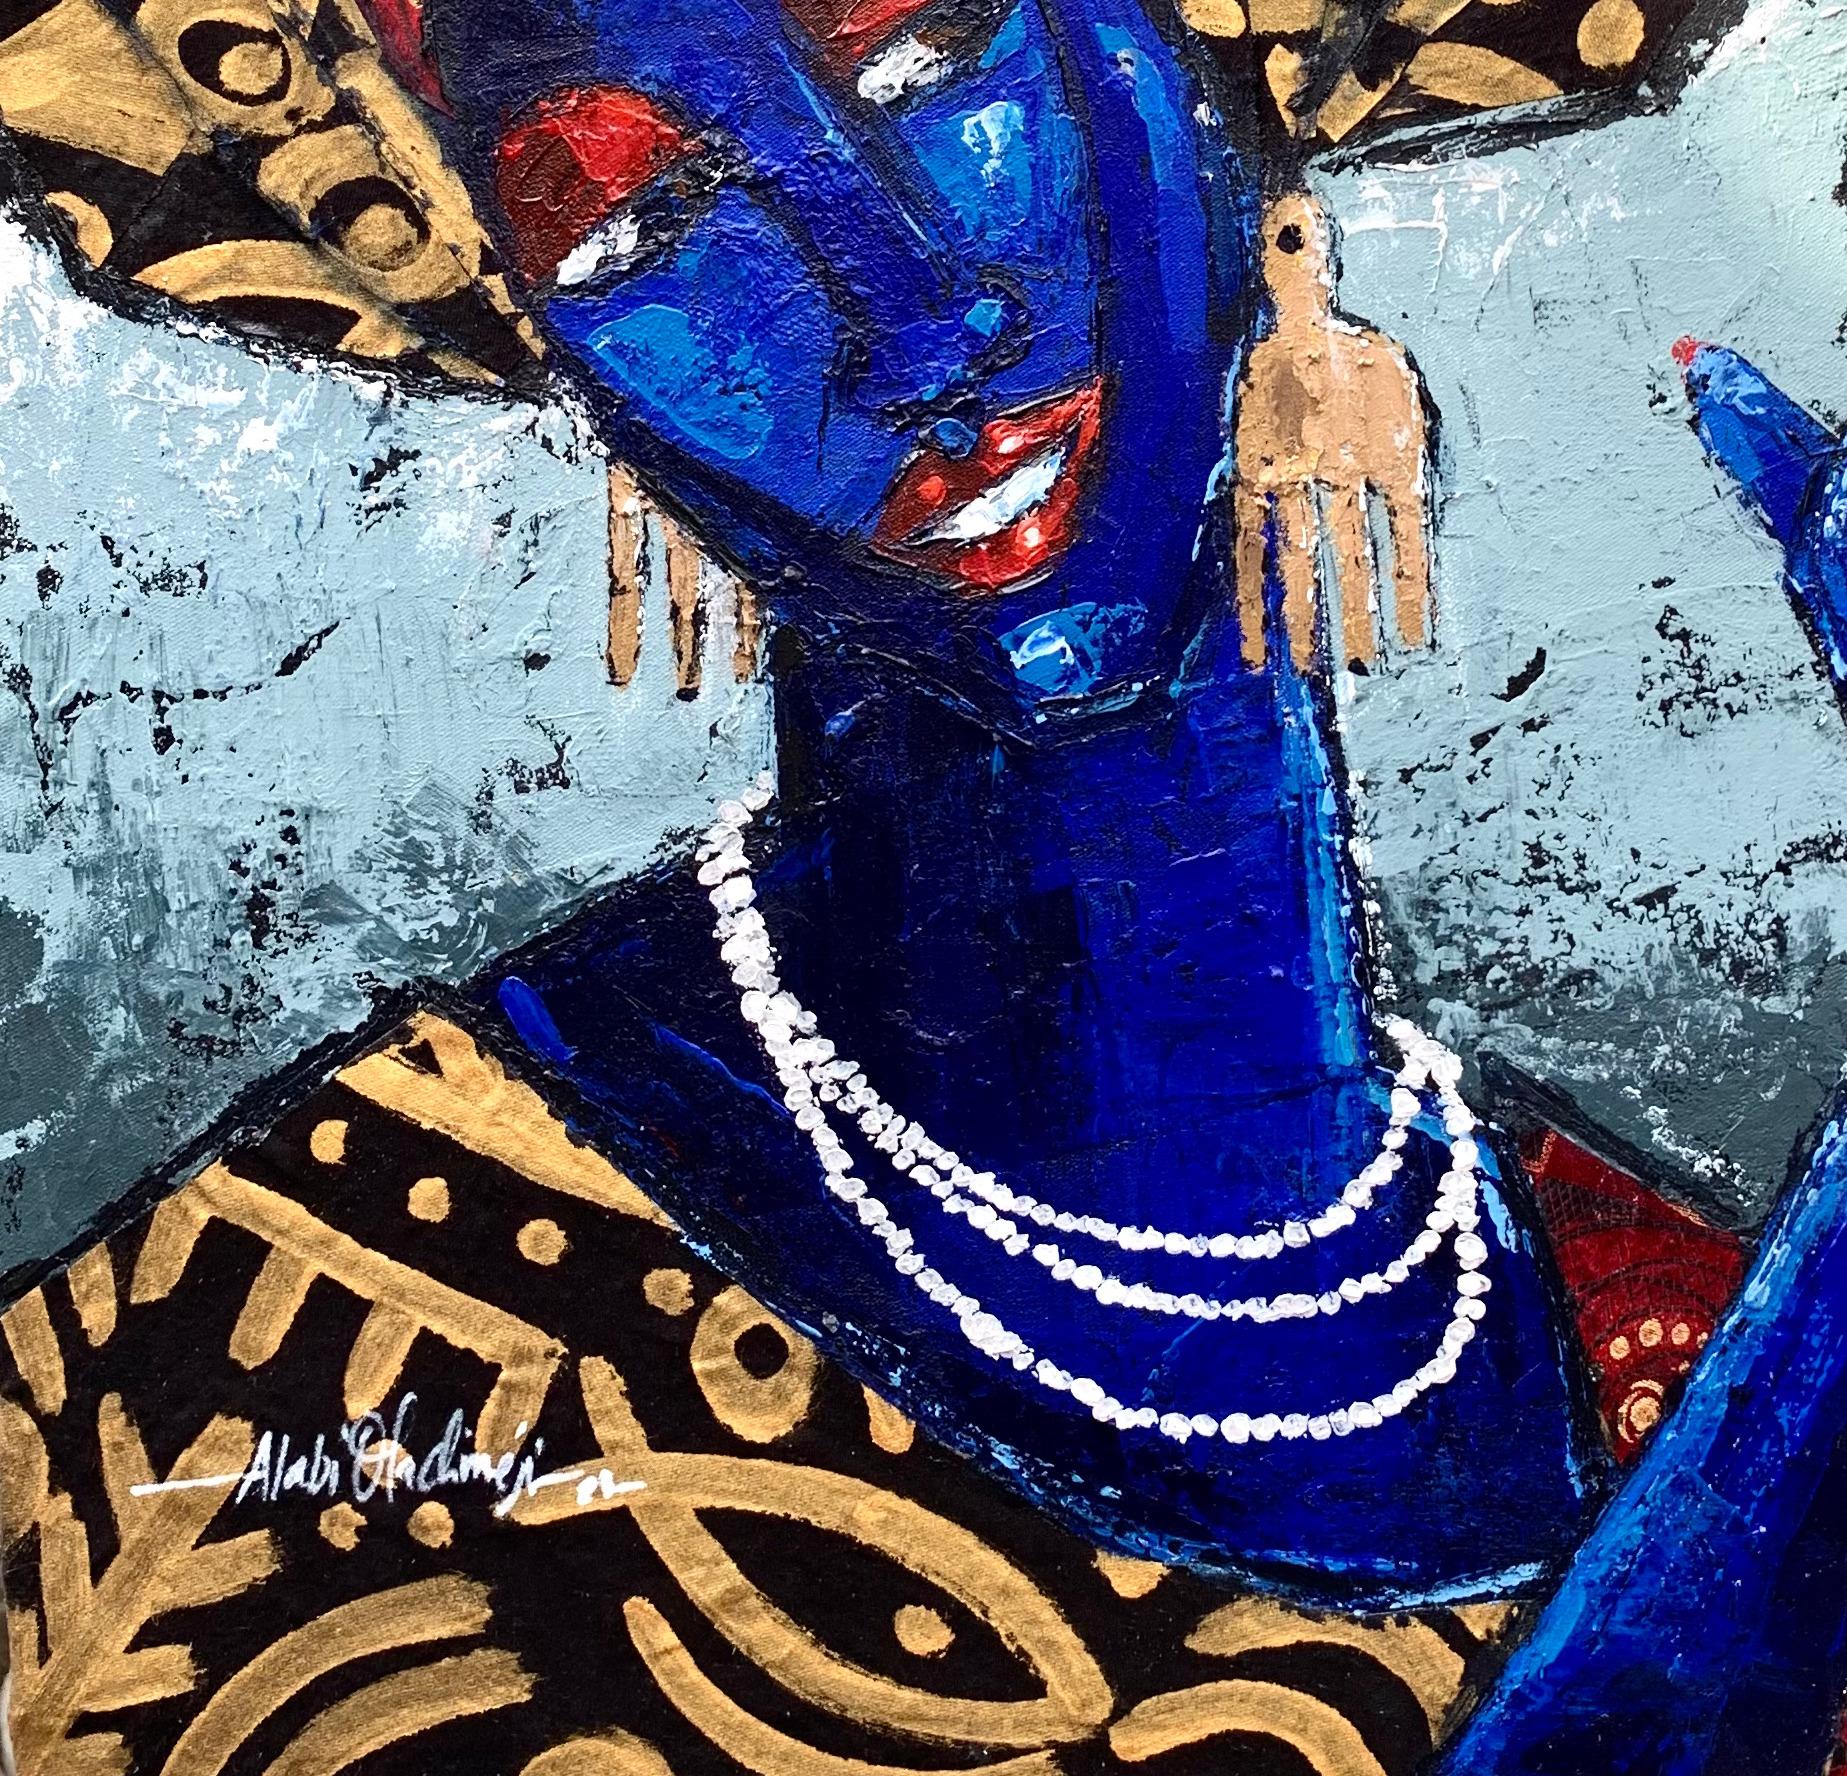 Obirin Asiko (Femme à la mode) est une peinture originale d'Oladimeji Alabi. Oladimeji a créé l'Obirin Asiko (Femme à la mode) avec des techniques mixtes sur une toile apprêtée de 21W par 24H pouces.

Cette peinture a été créée pour documenter le